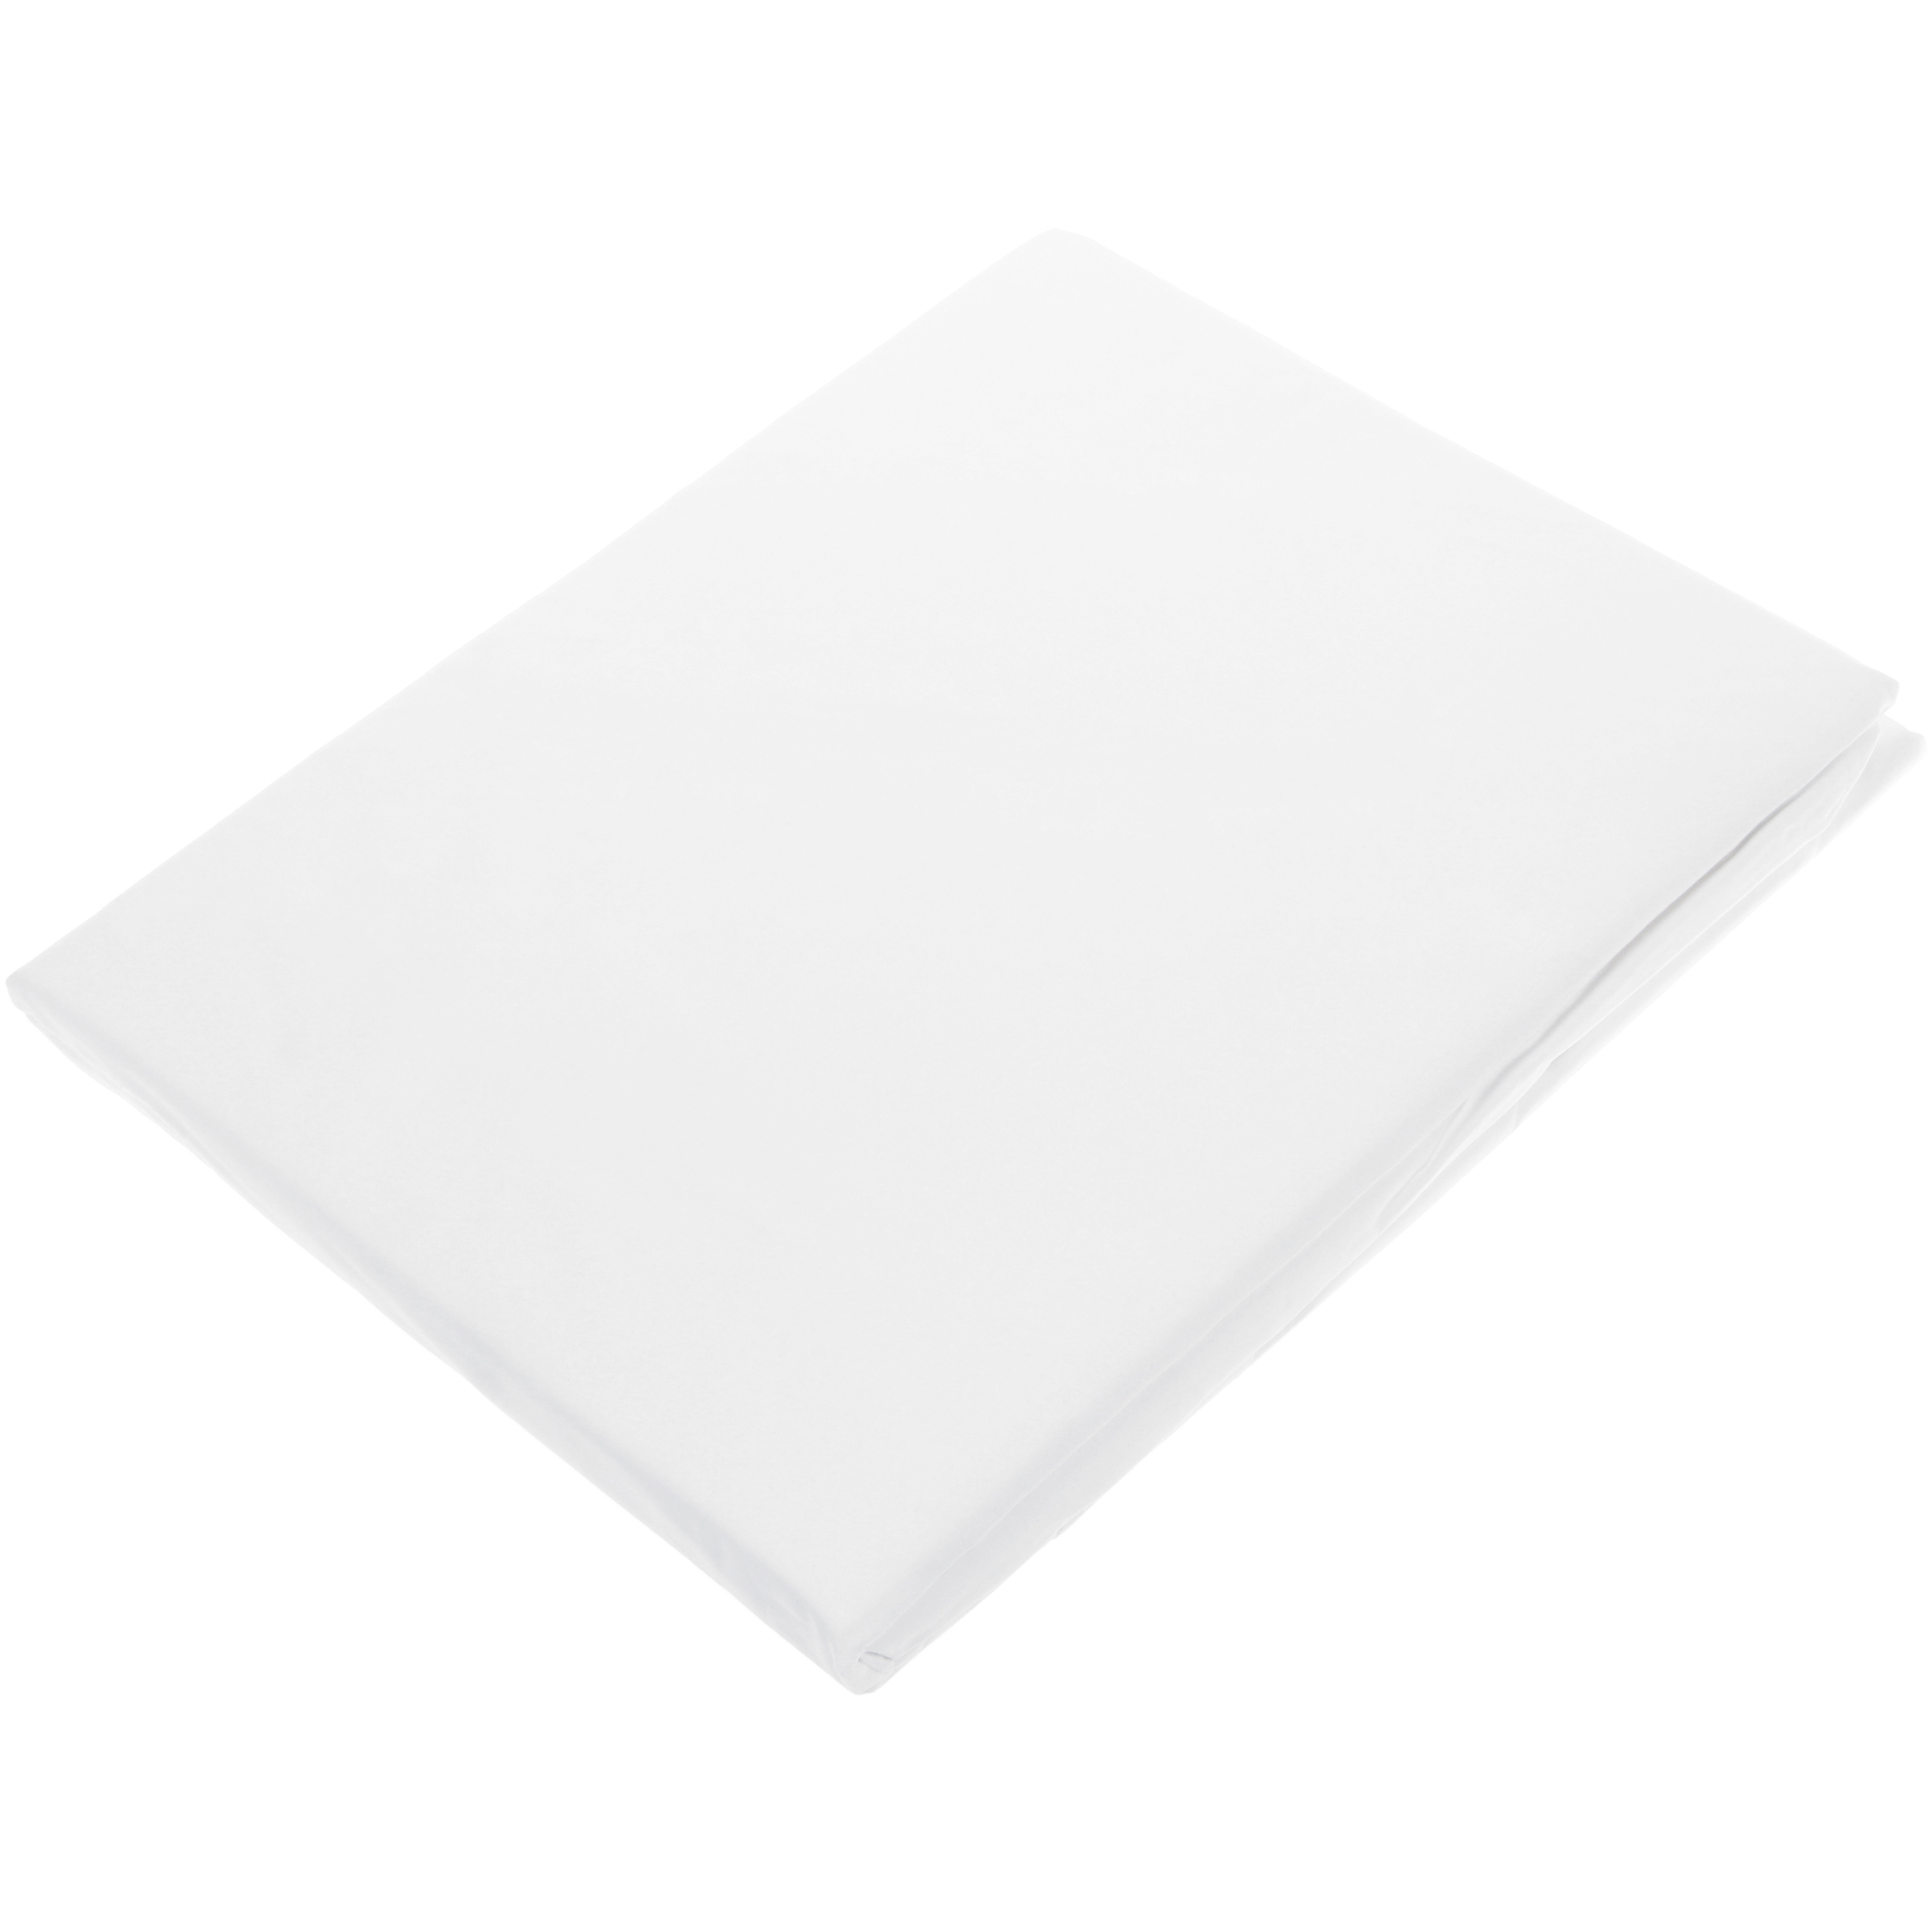 фото Простыня на резинке togas плаза белая 160х200 см